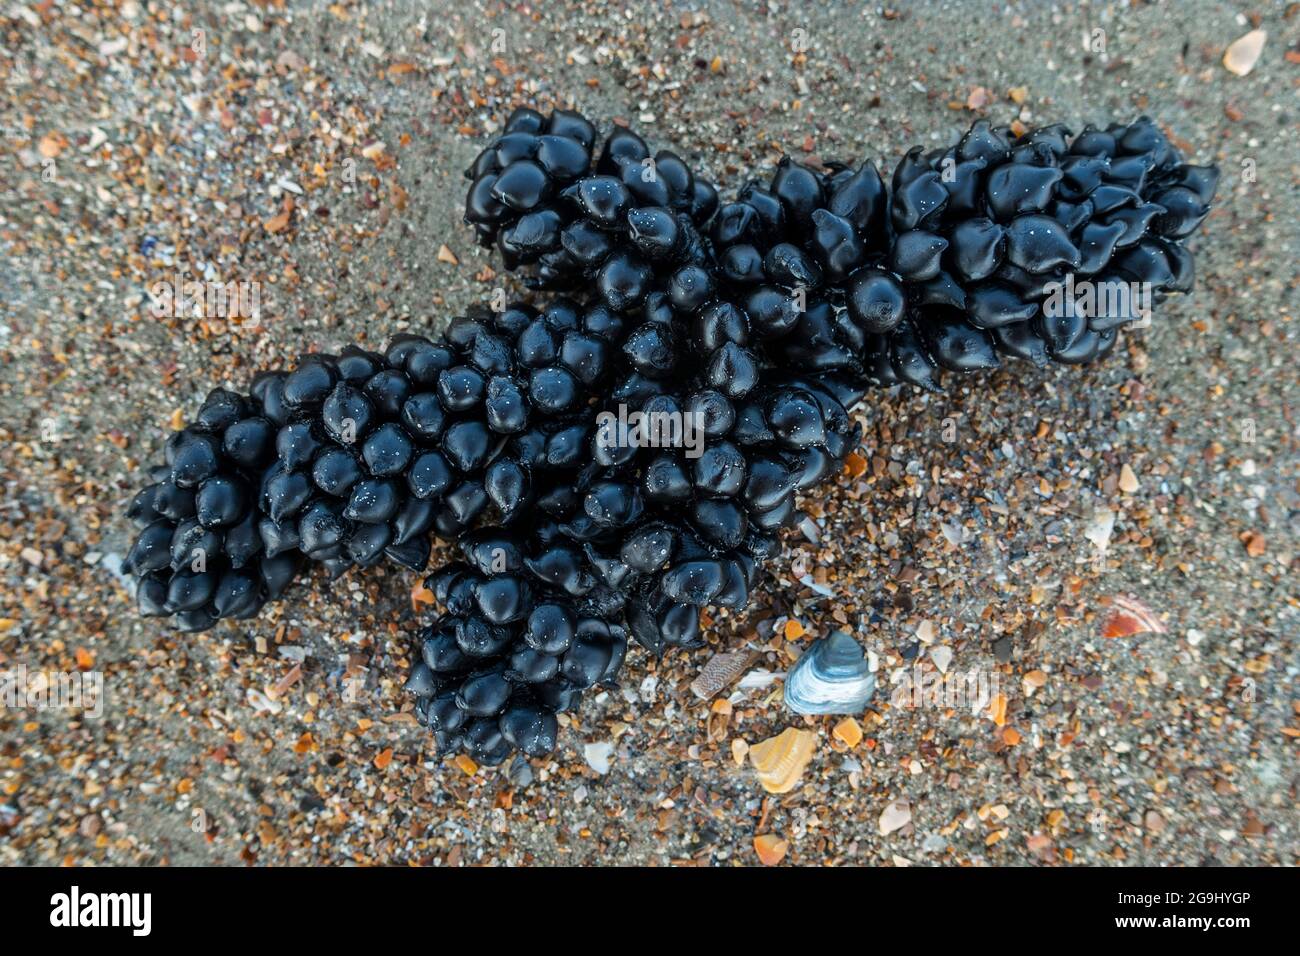 Uova nere / capsule d'uovo di seppie europee comuni (Sepia officinalis) lavate sulla spiaggia di sabbia lungo la costa del Mare del Nord in estate Foto Stock